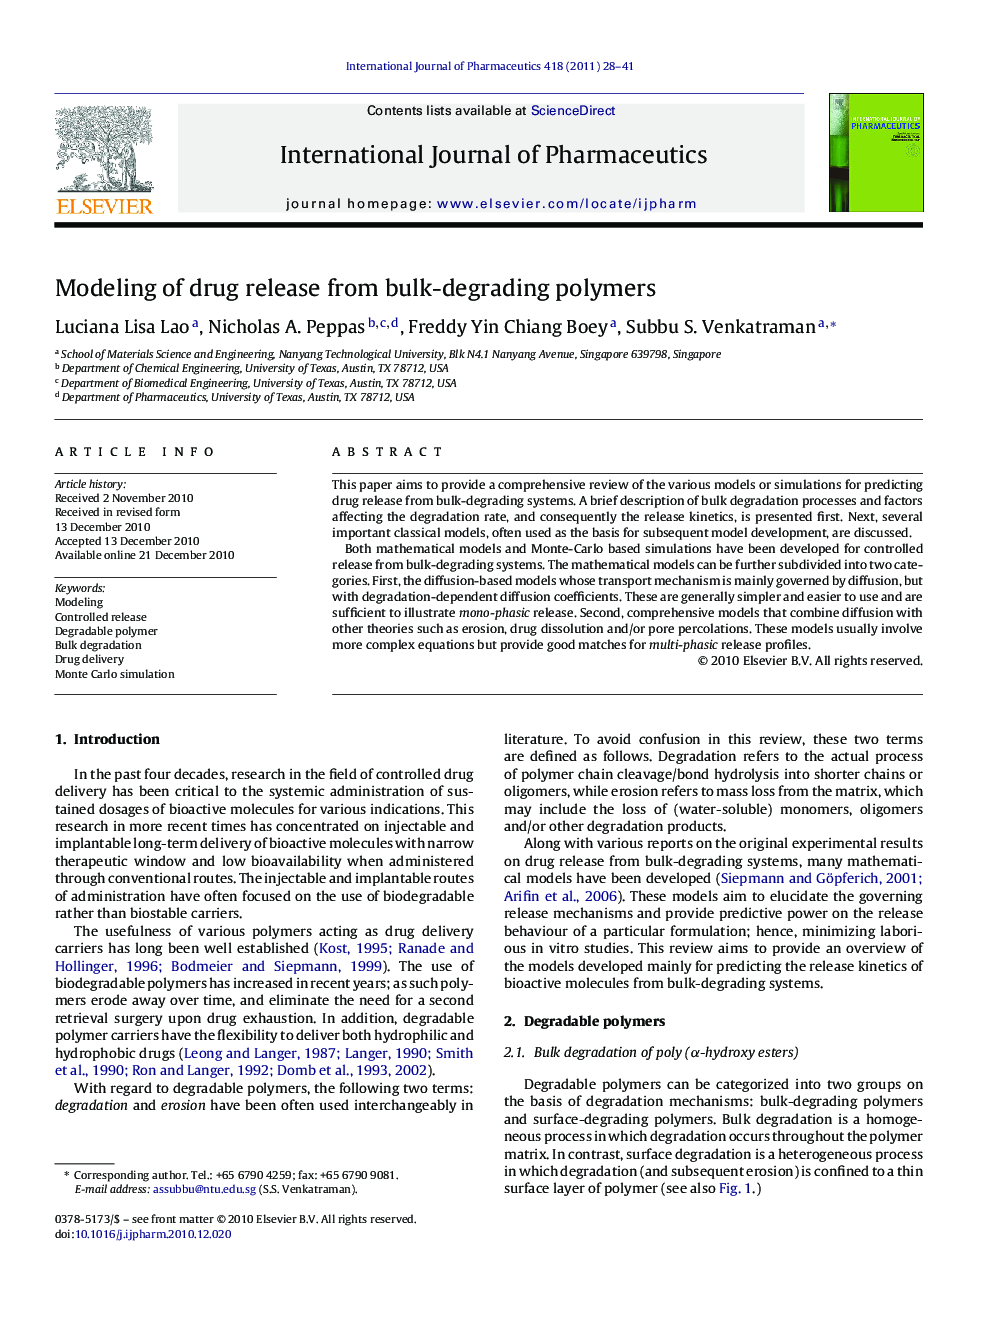 Modeling of drug release from bulk-degrading polymers